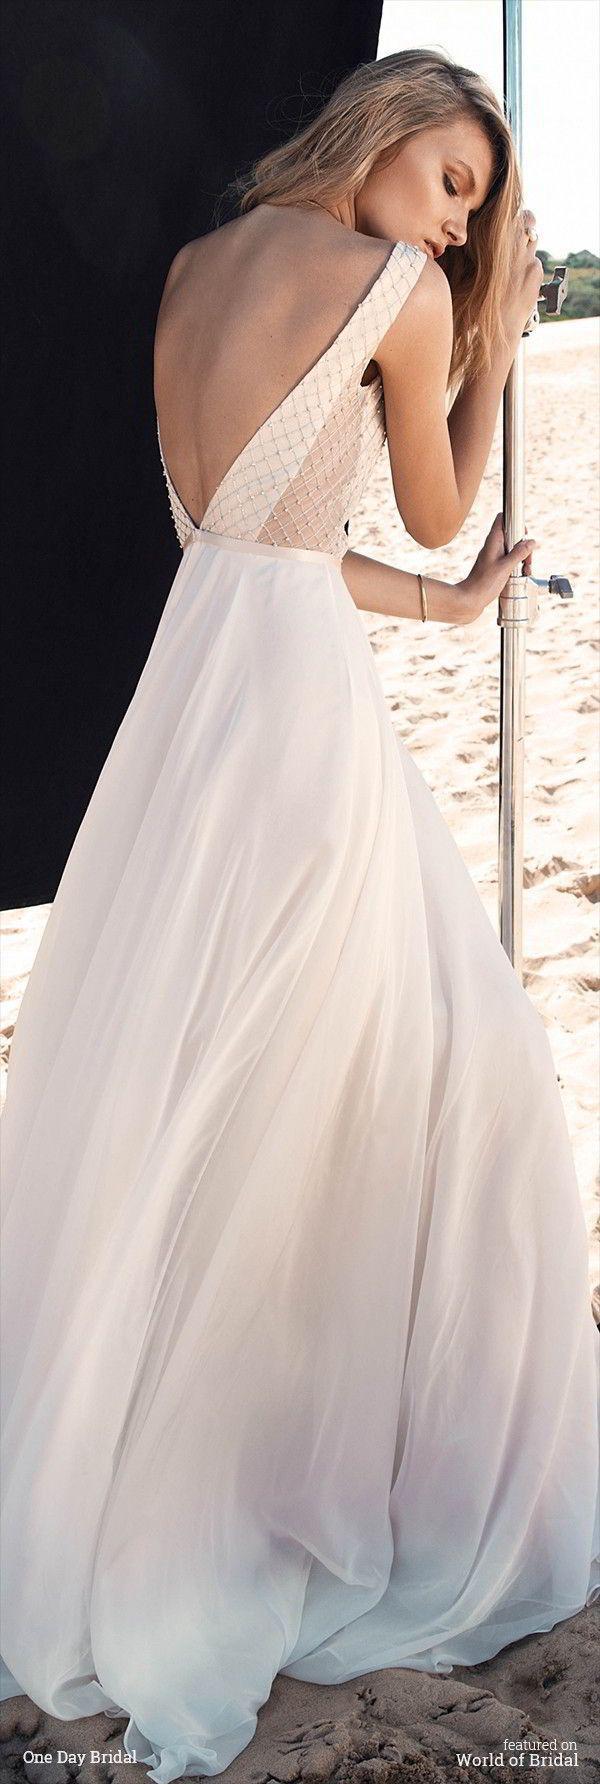 รูปภาพ:http://www.worldofbridal.com/wp-content/uploads/2016/05/One-Day-Bridal-2016-Wedding-Dress-8.jpg